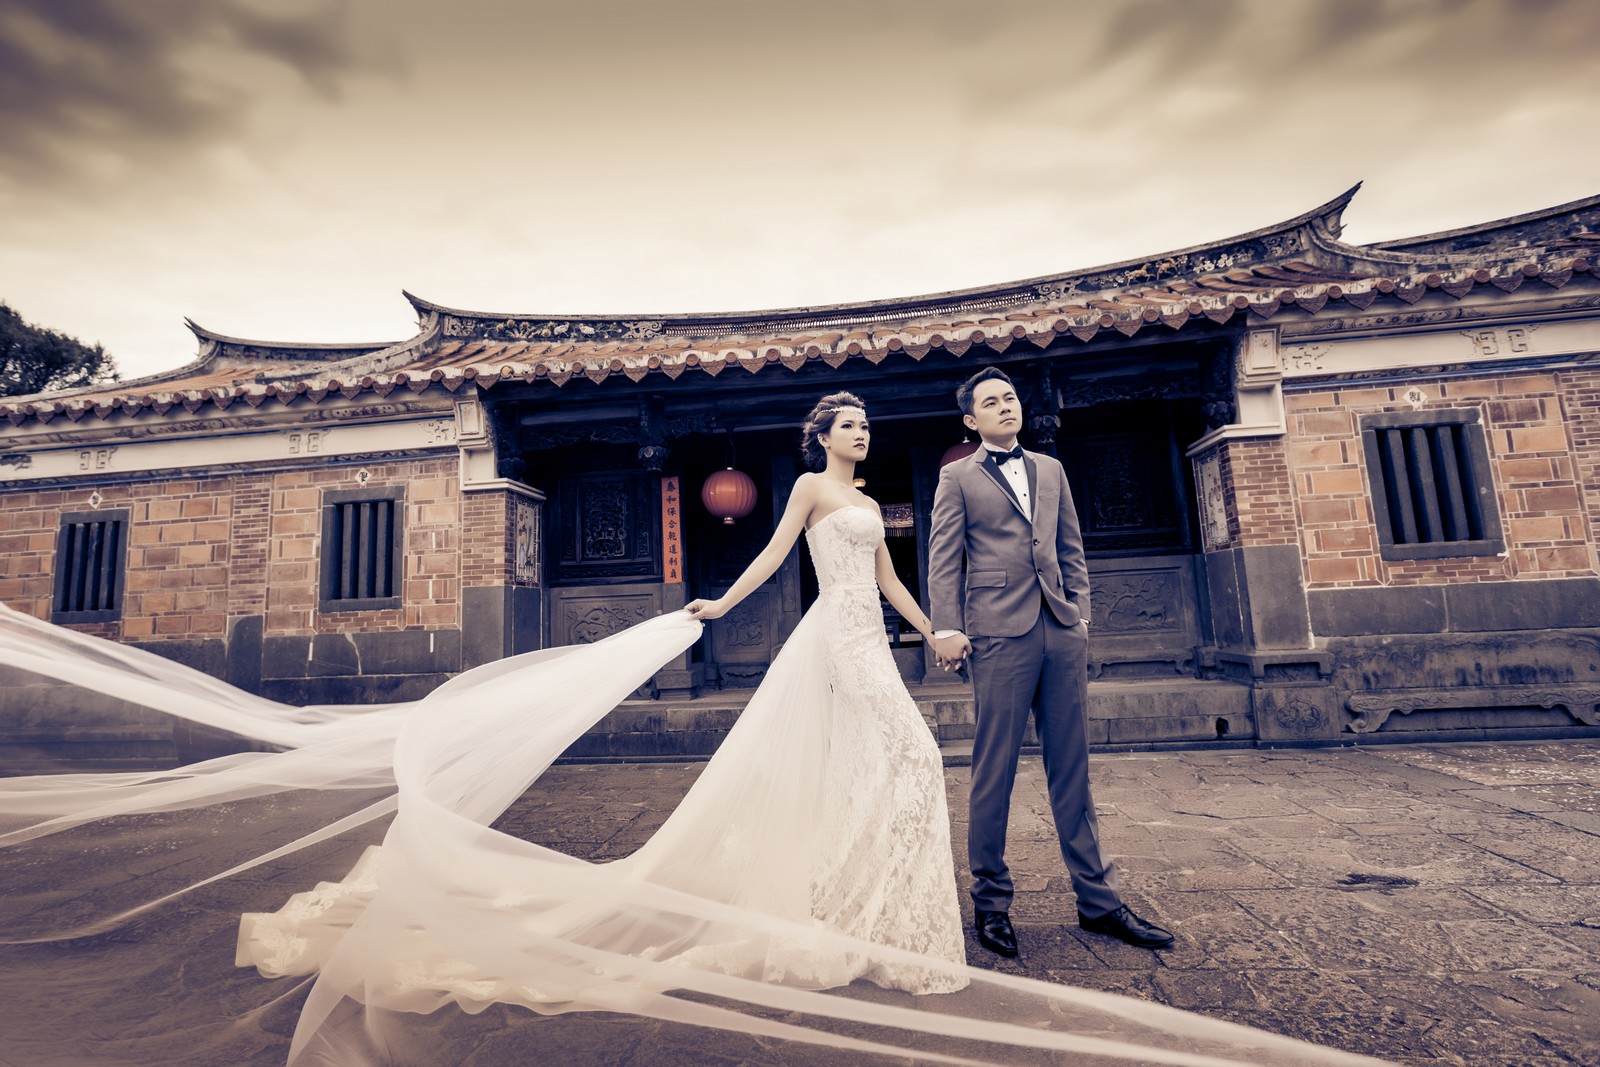  海外婚纱 旅行婚纱摄影 台灣最好拍的6大台北婚纱照景点